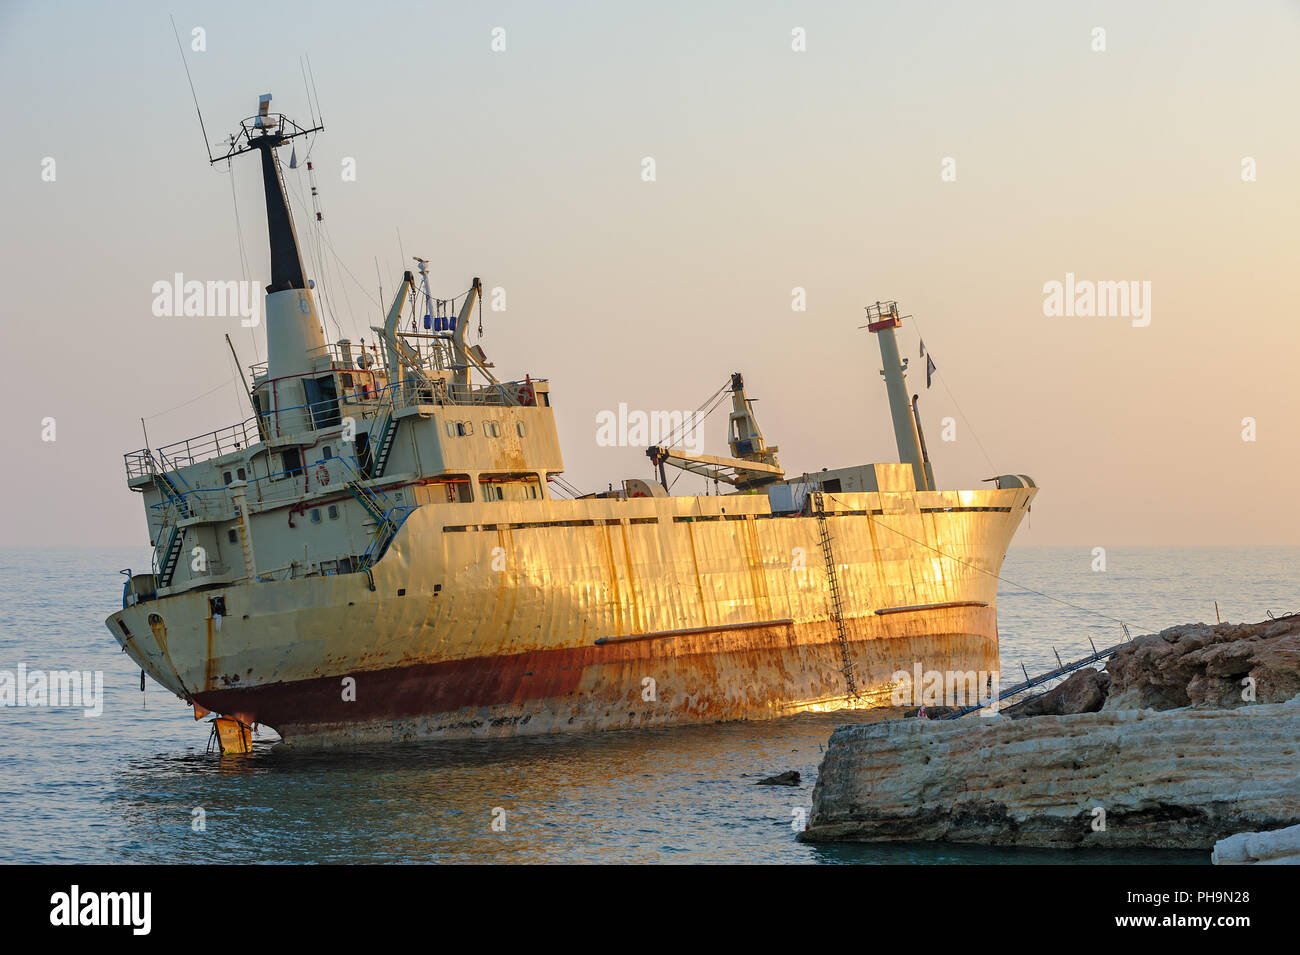 Ship aground near rocky coast Stock Photo